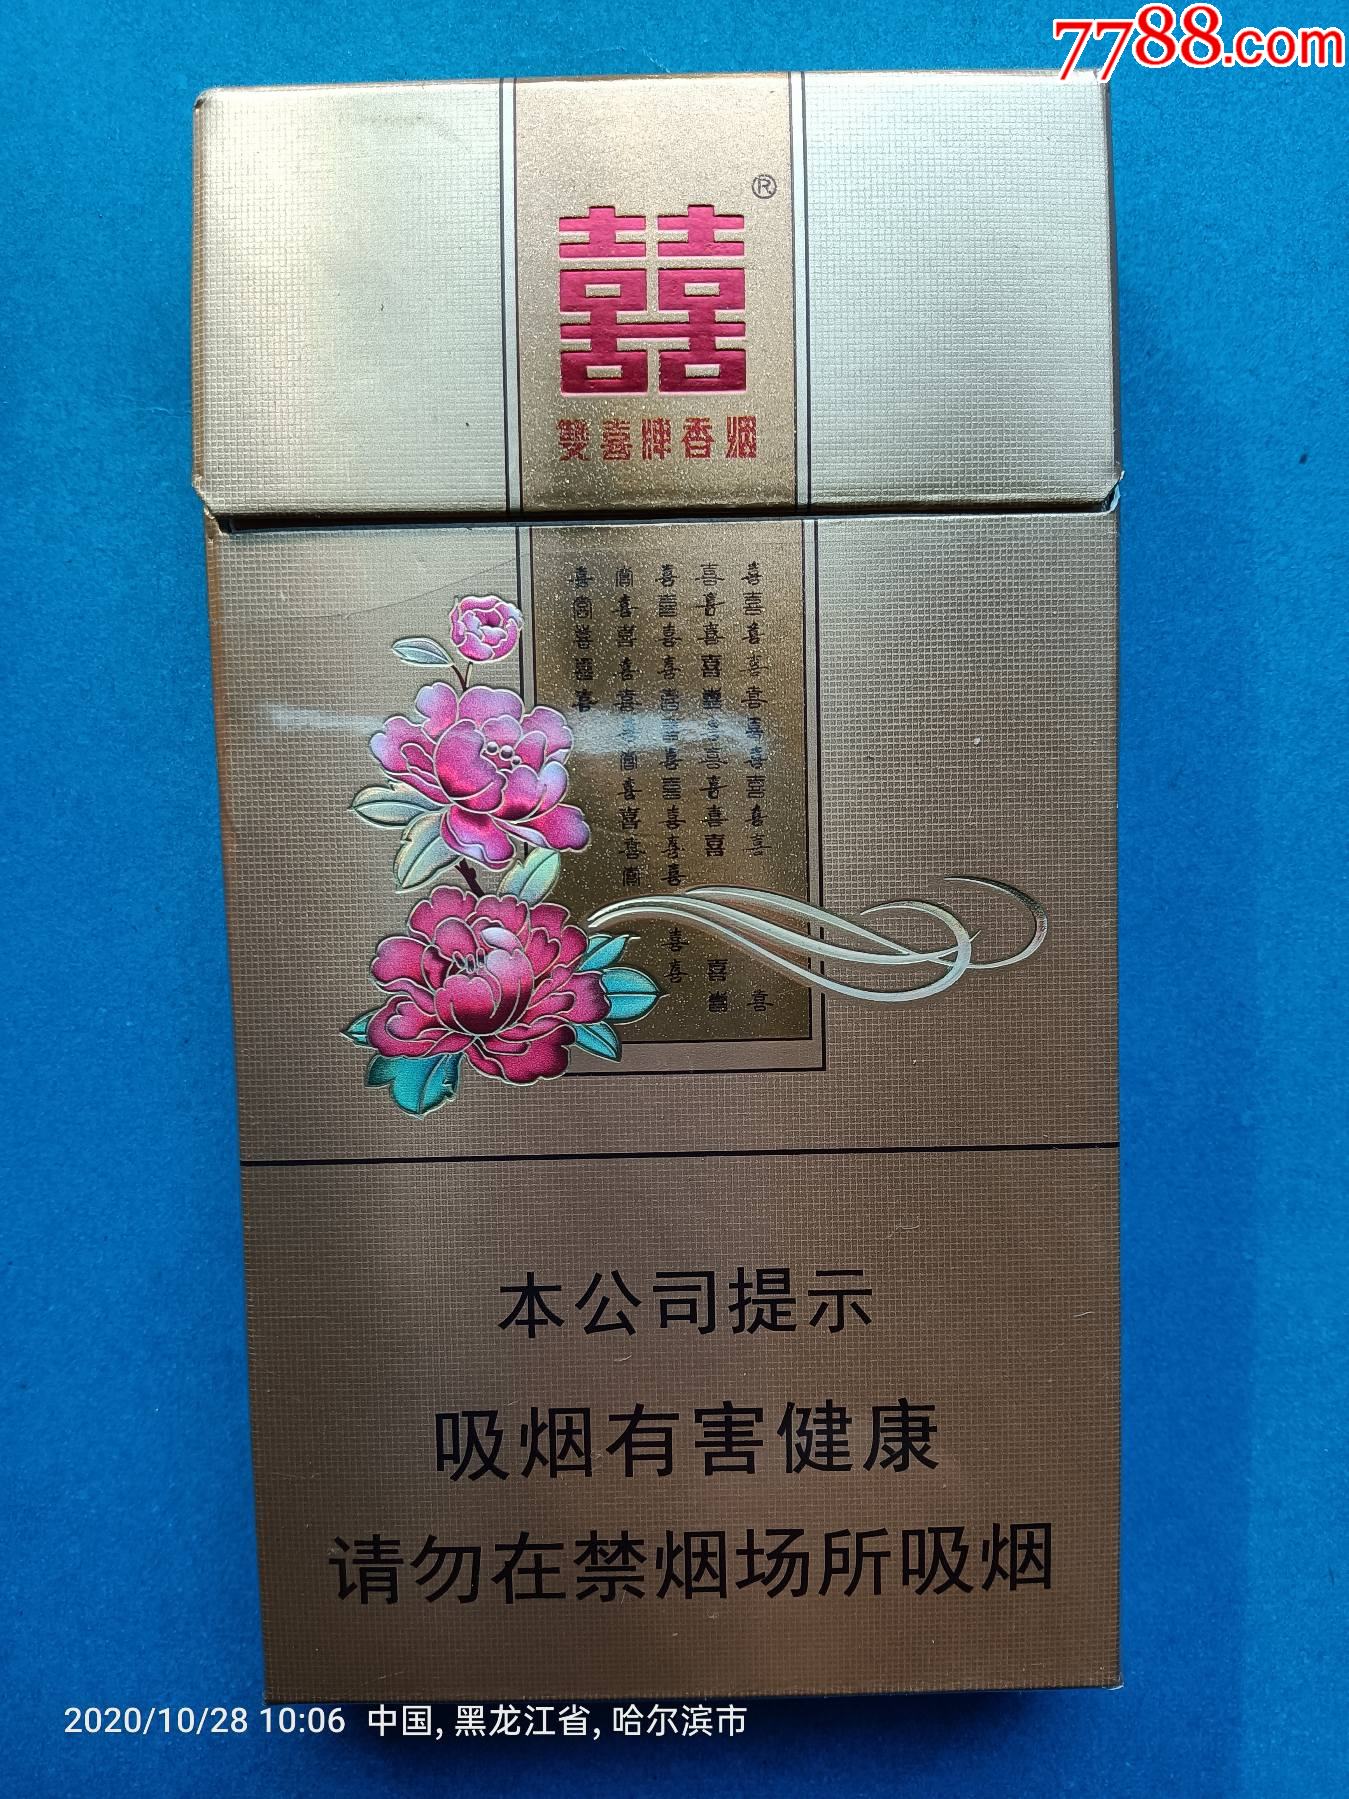 烟标双喜牌香烟花悦焦8广东中烟工业有限责任公司出品